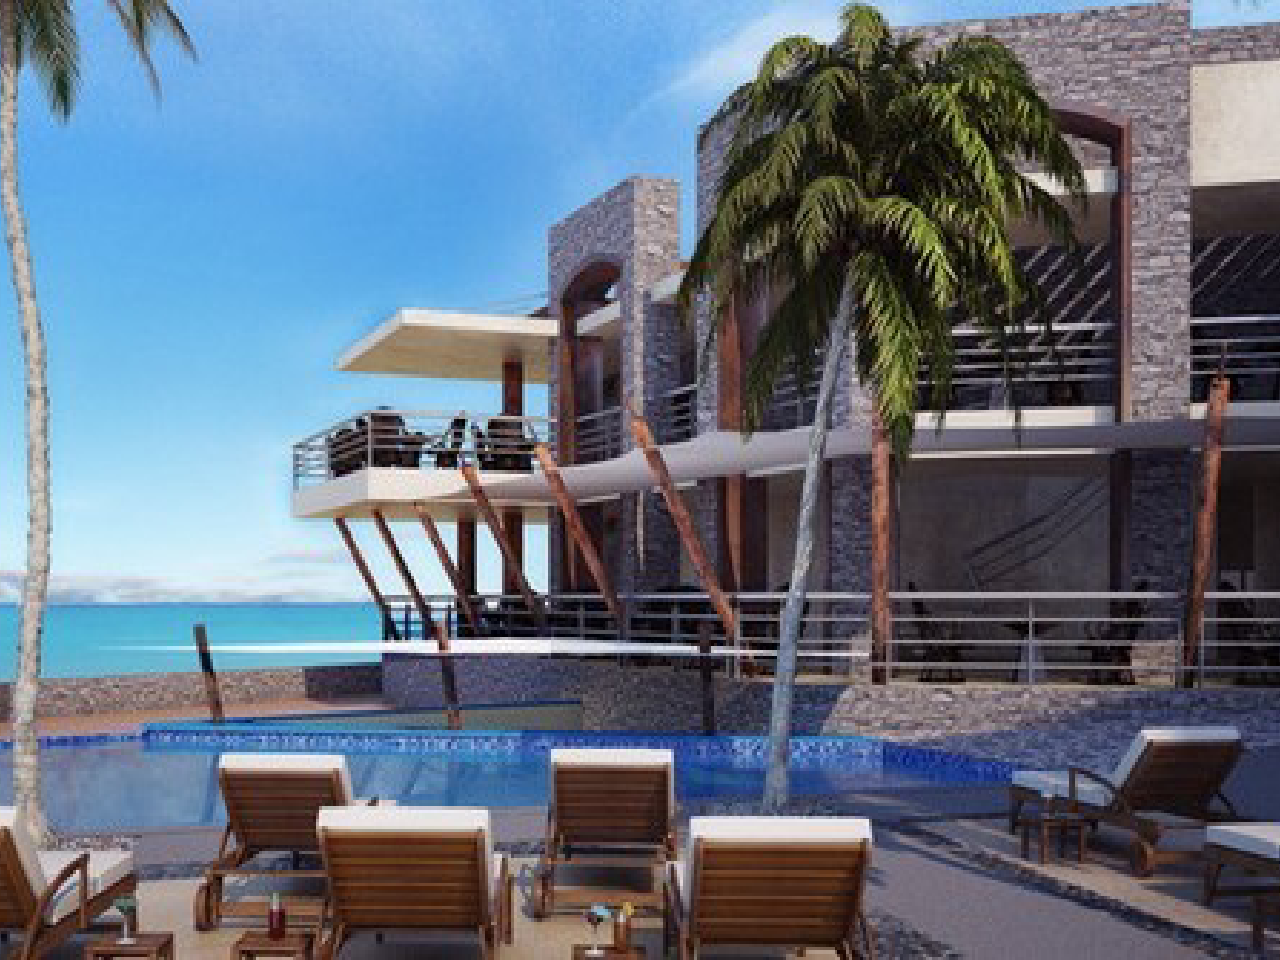 estructura de hotel - Bodas en la playa - Now amber - Now amber hotel - bodas en vallarta - Paquetes de boda en Vallarta